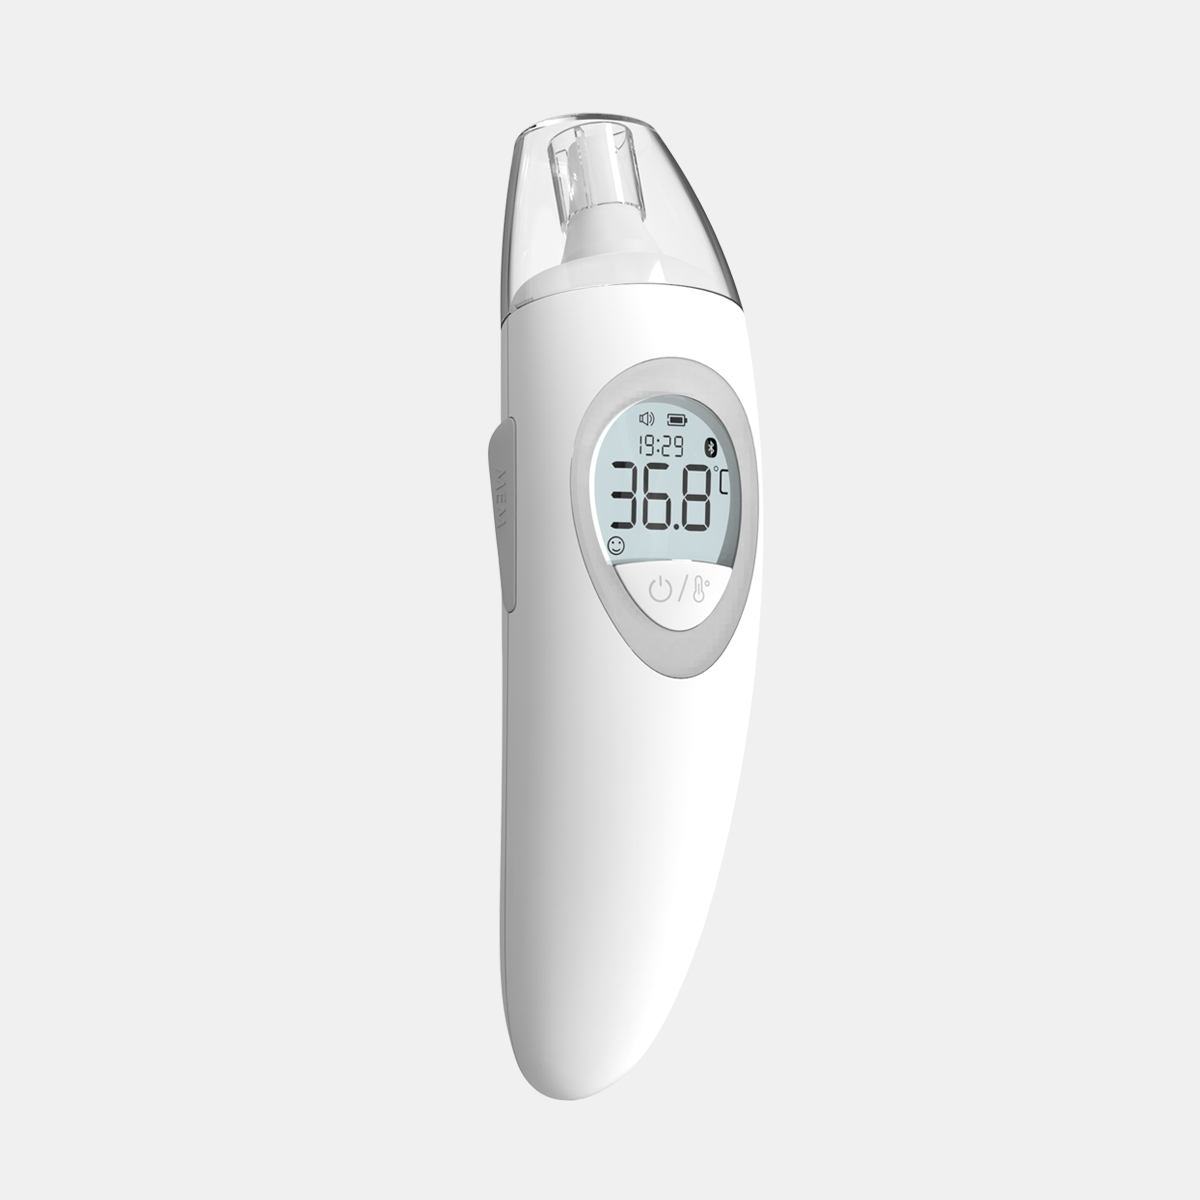 CE MDR kinnituse kiire lugemine parim ülitäpne infrapuna kõrvatermomeeter kehatemperatuuri jaoks